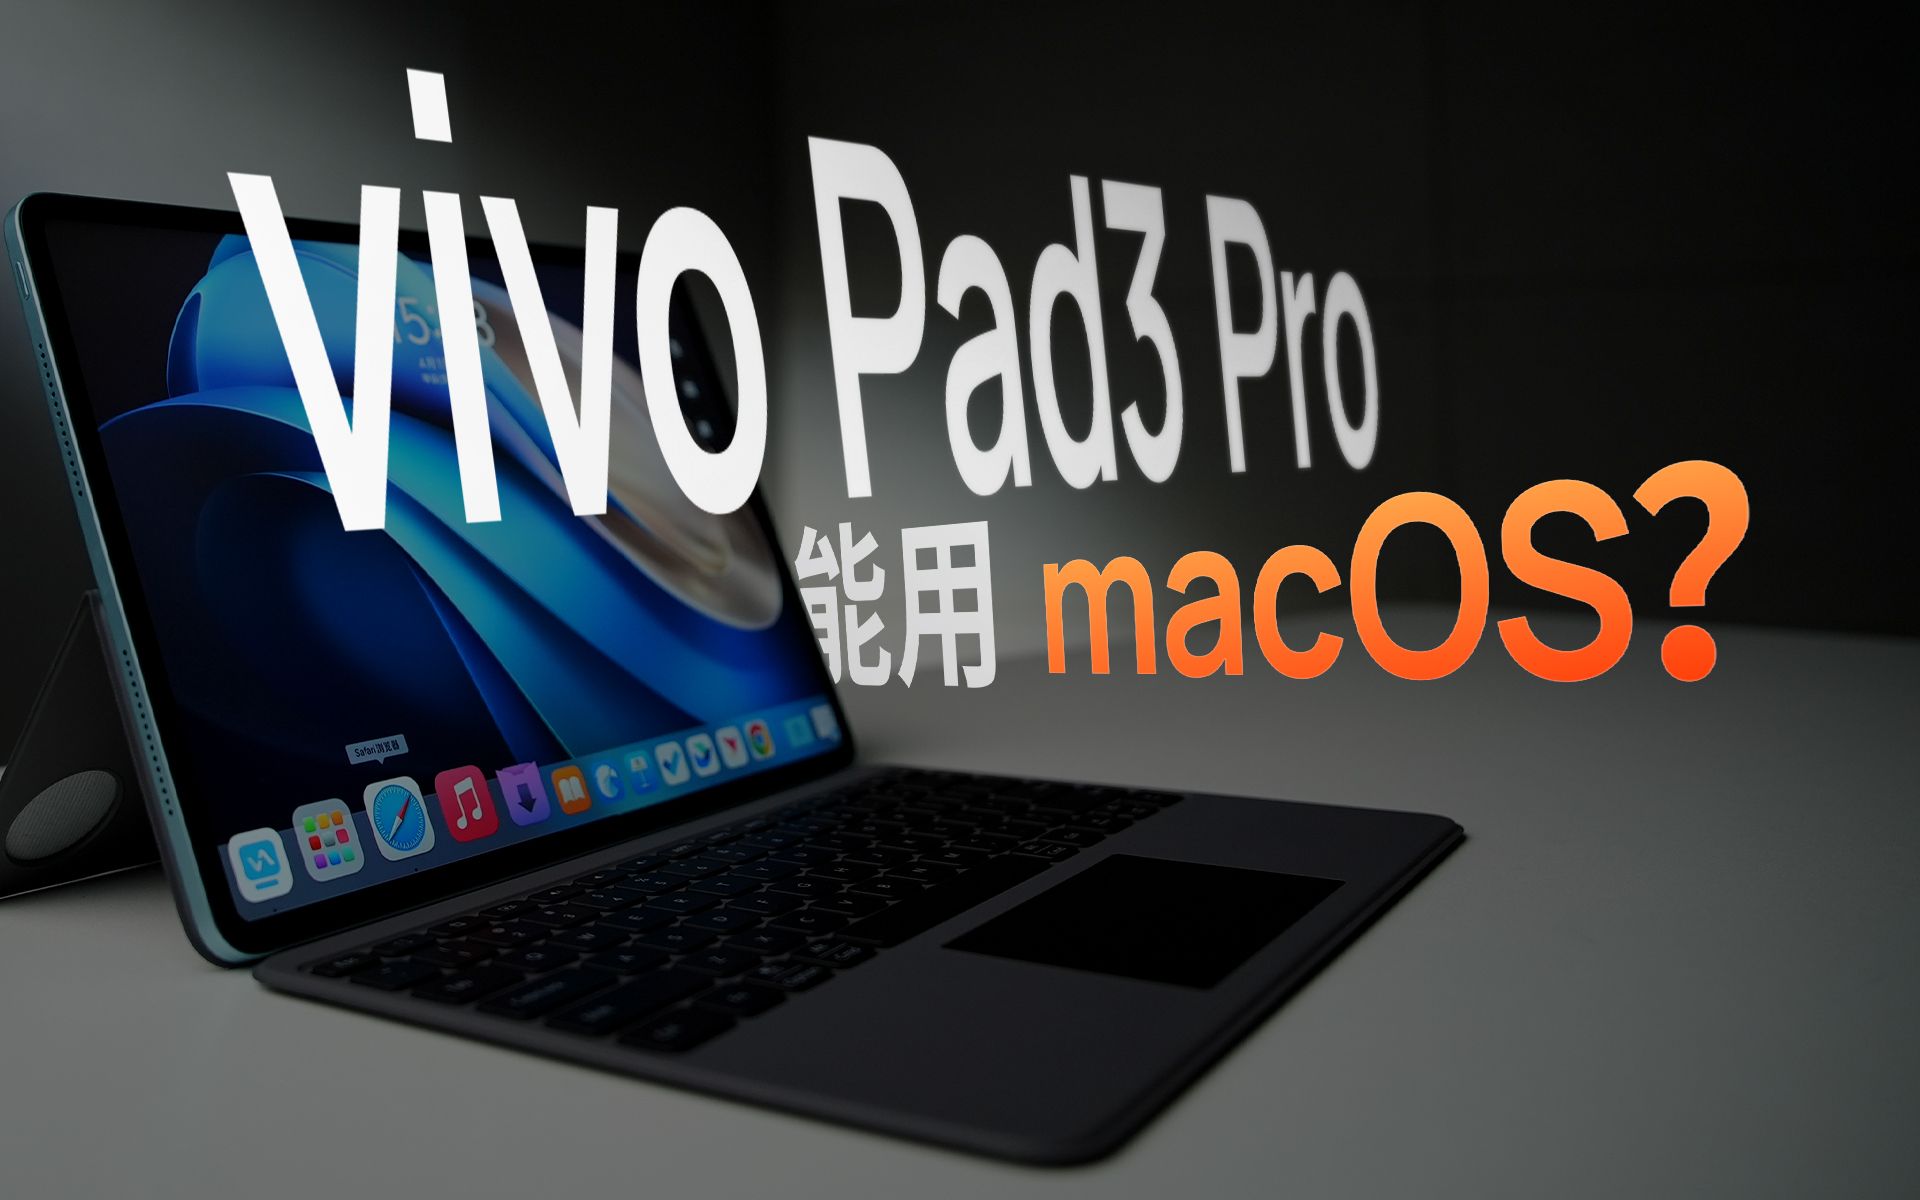 远程操控 macOS！搭载天玑 9300 的 vivo Pad3 Pro 值得买吗？